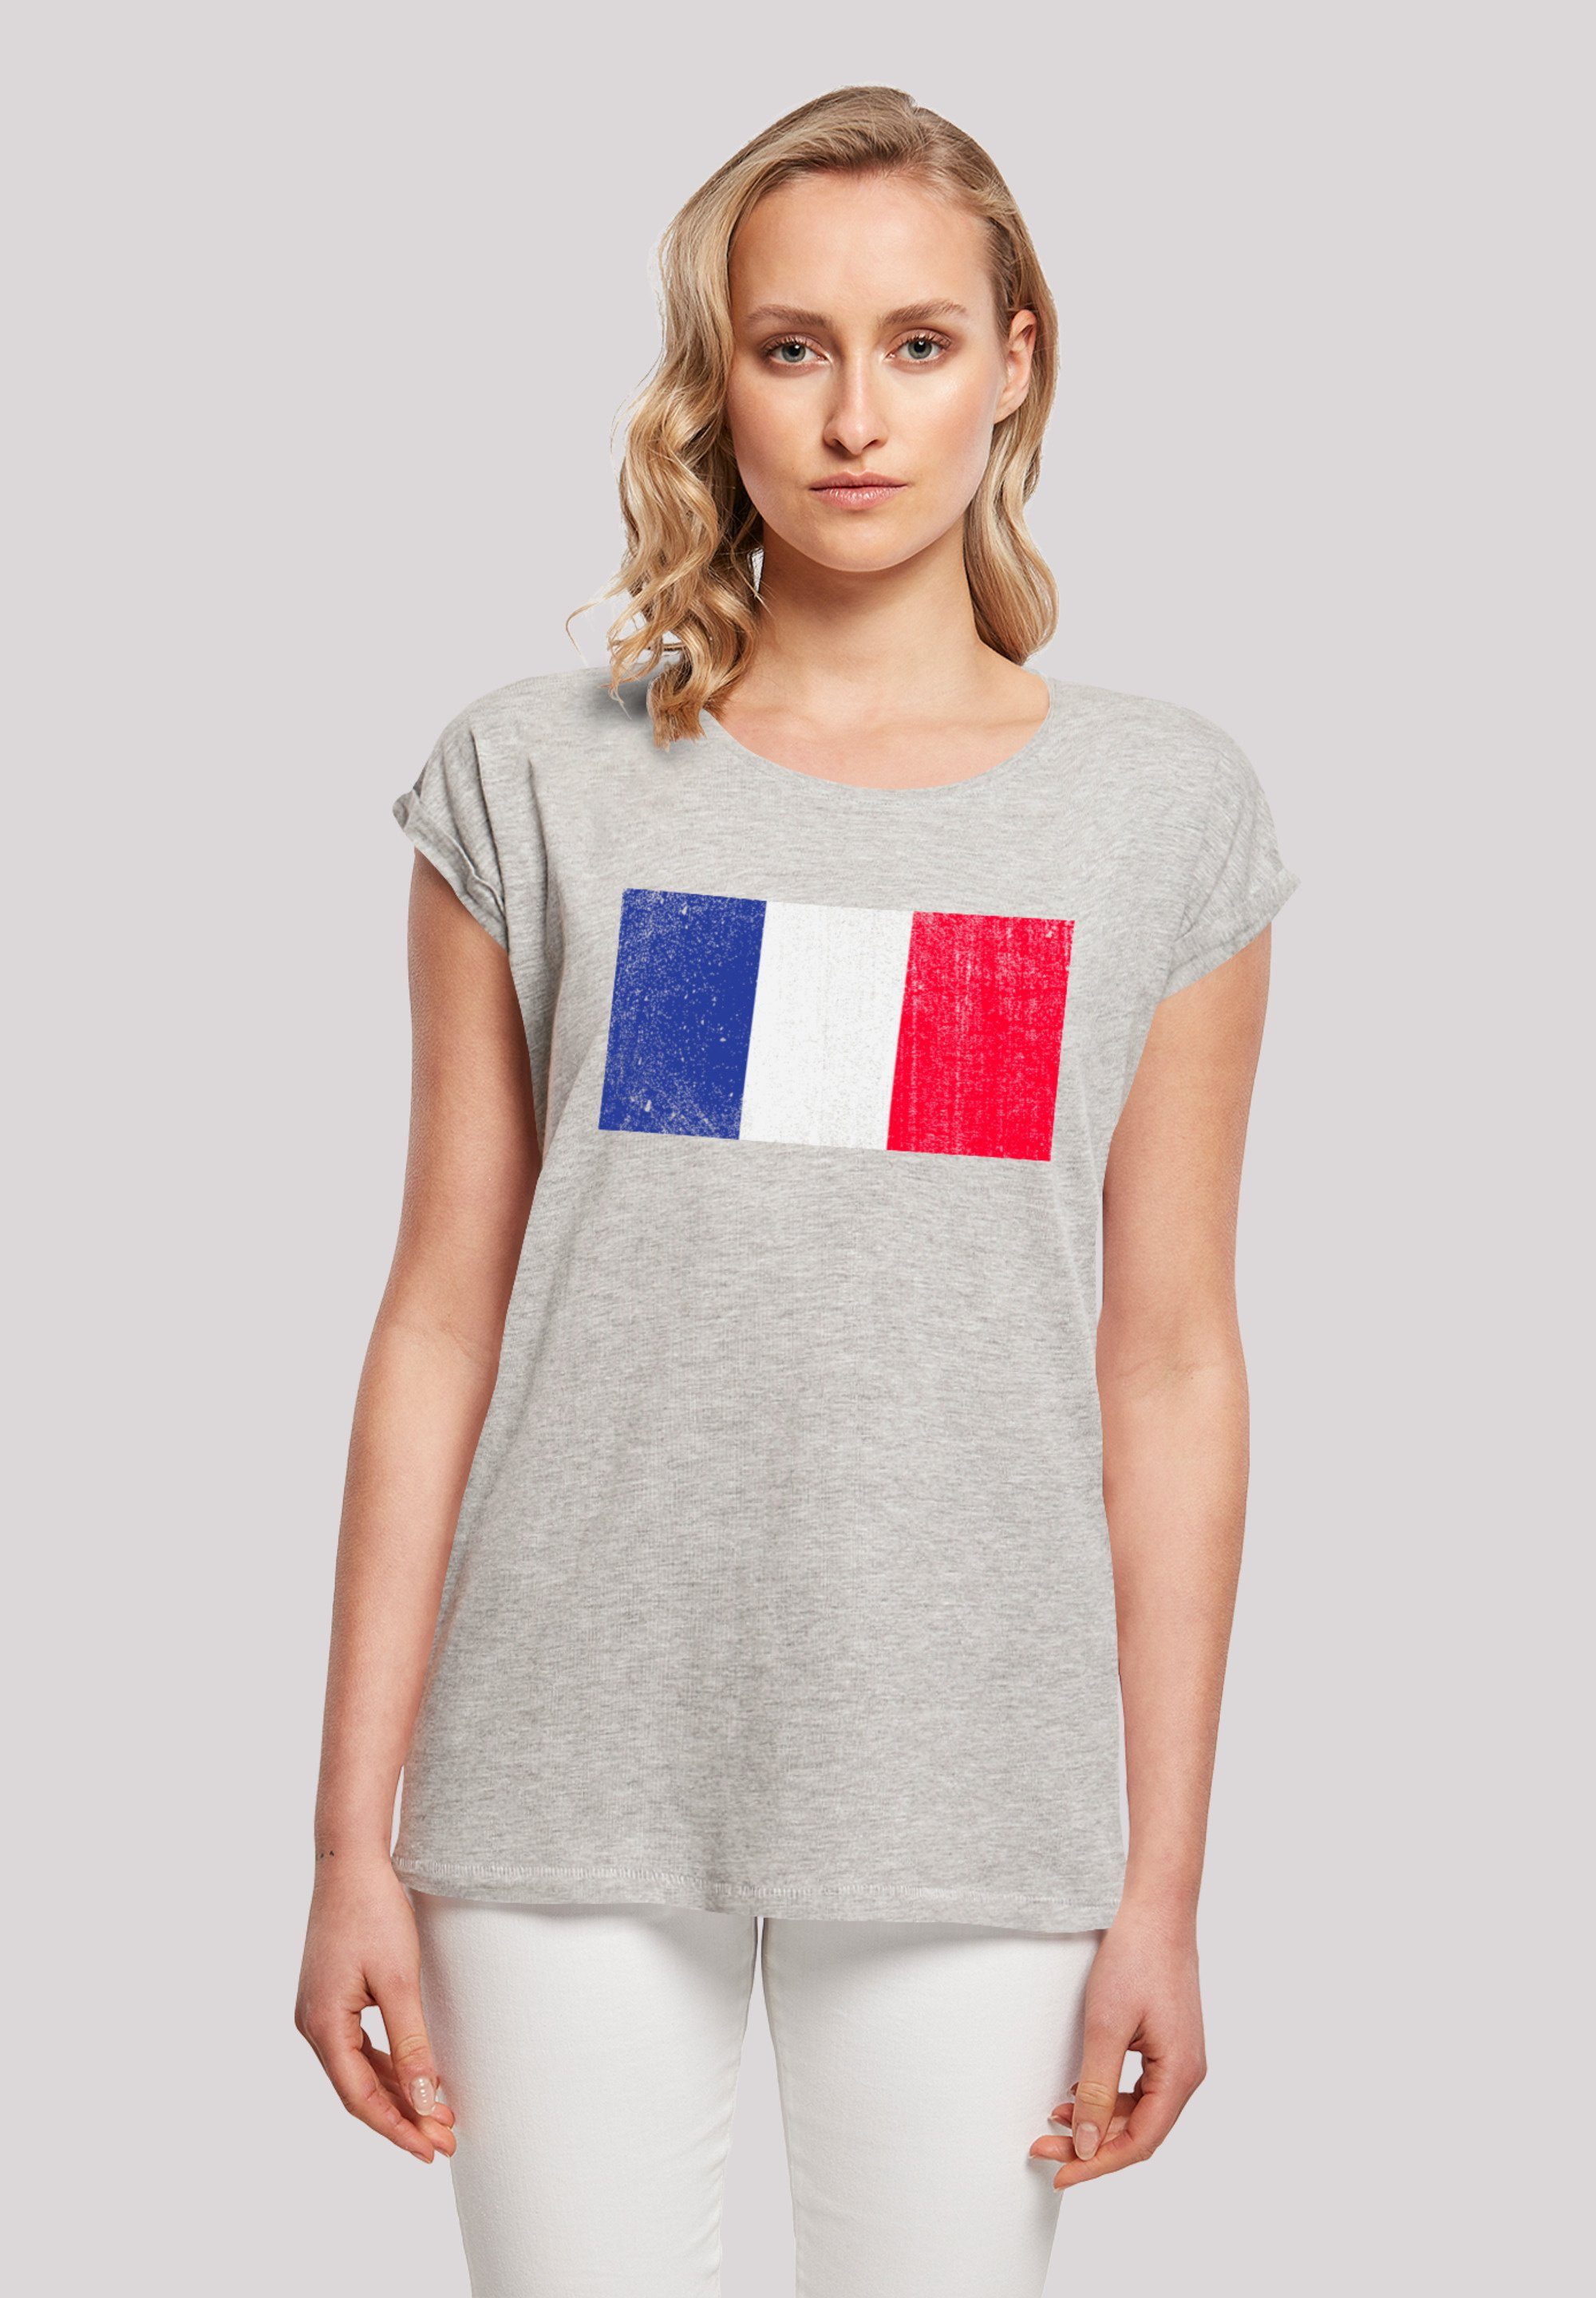 F4NT4STIC T-Shirt mit hohem Print, distressed Tragekomfort Flagge Baumwollstoff France Frankreich weicher Sehr